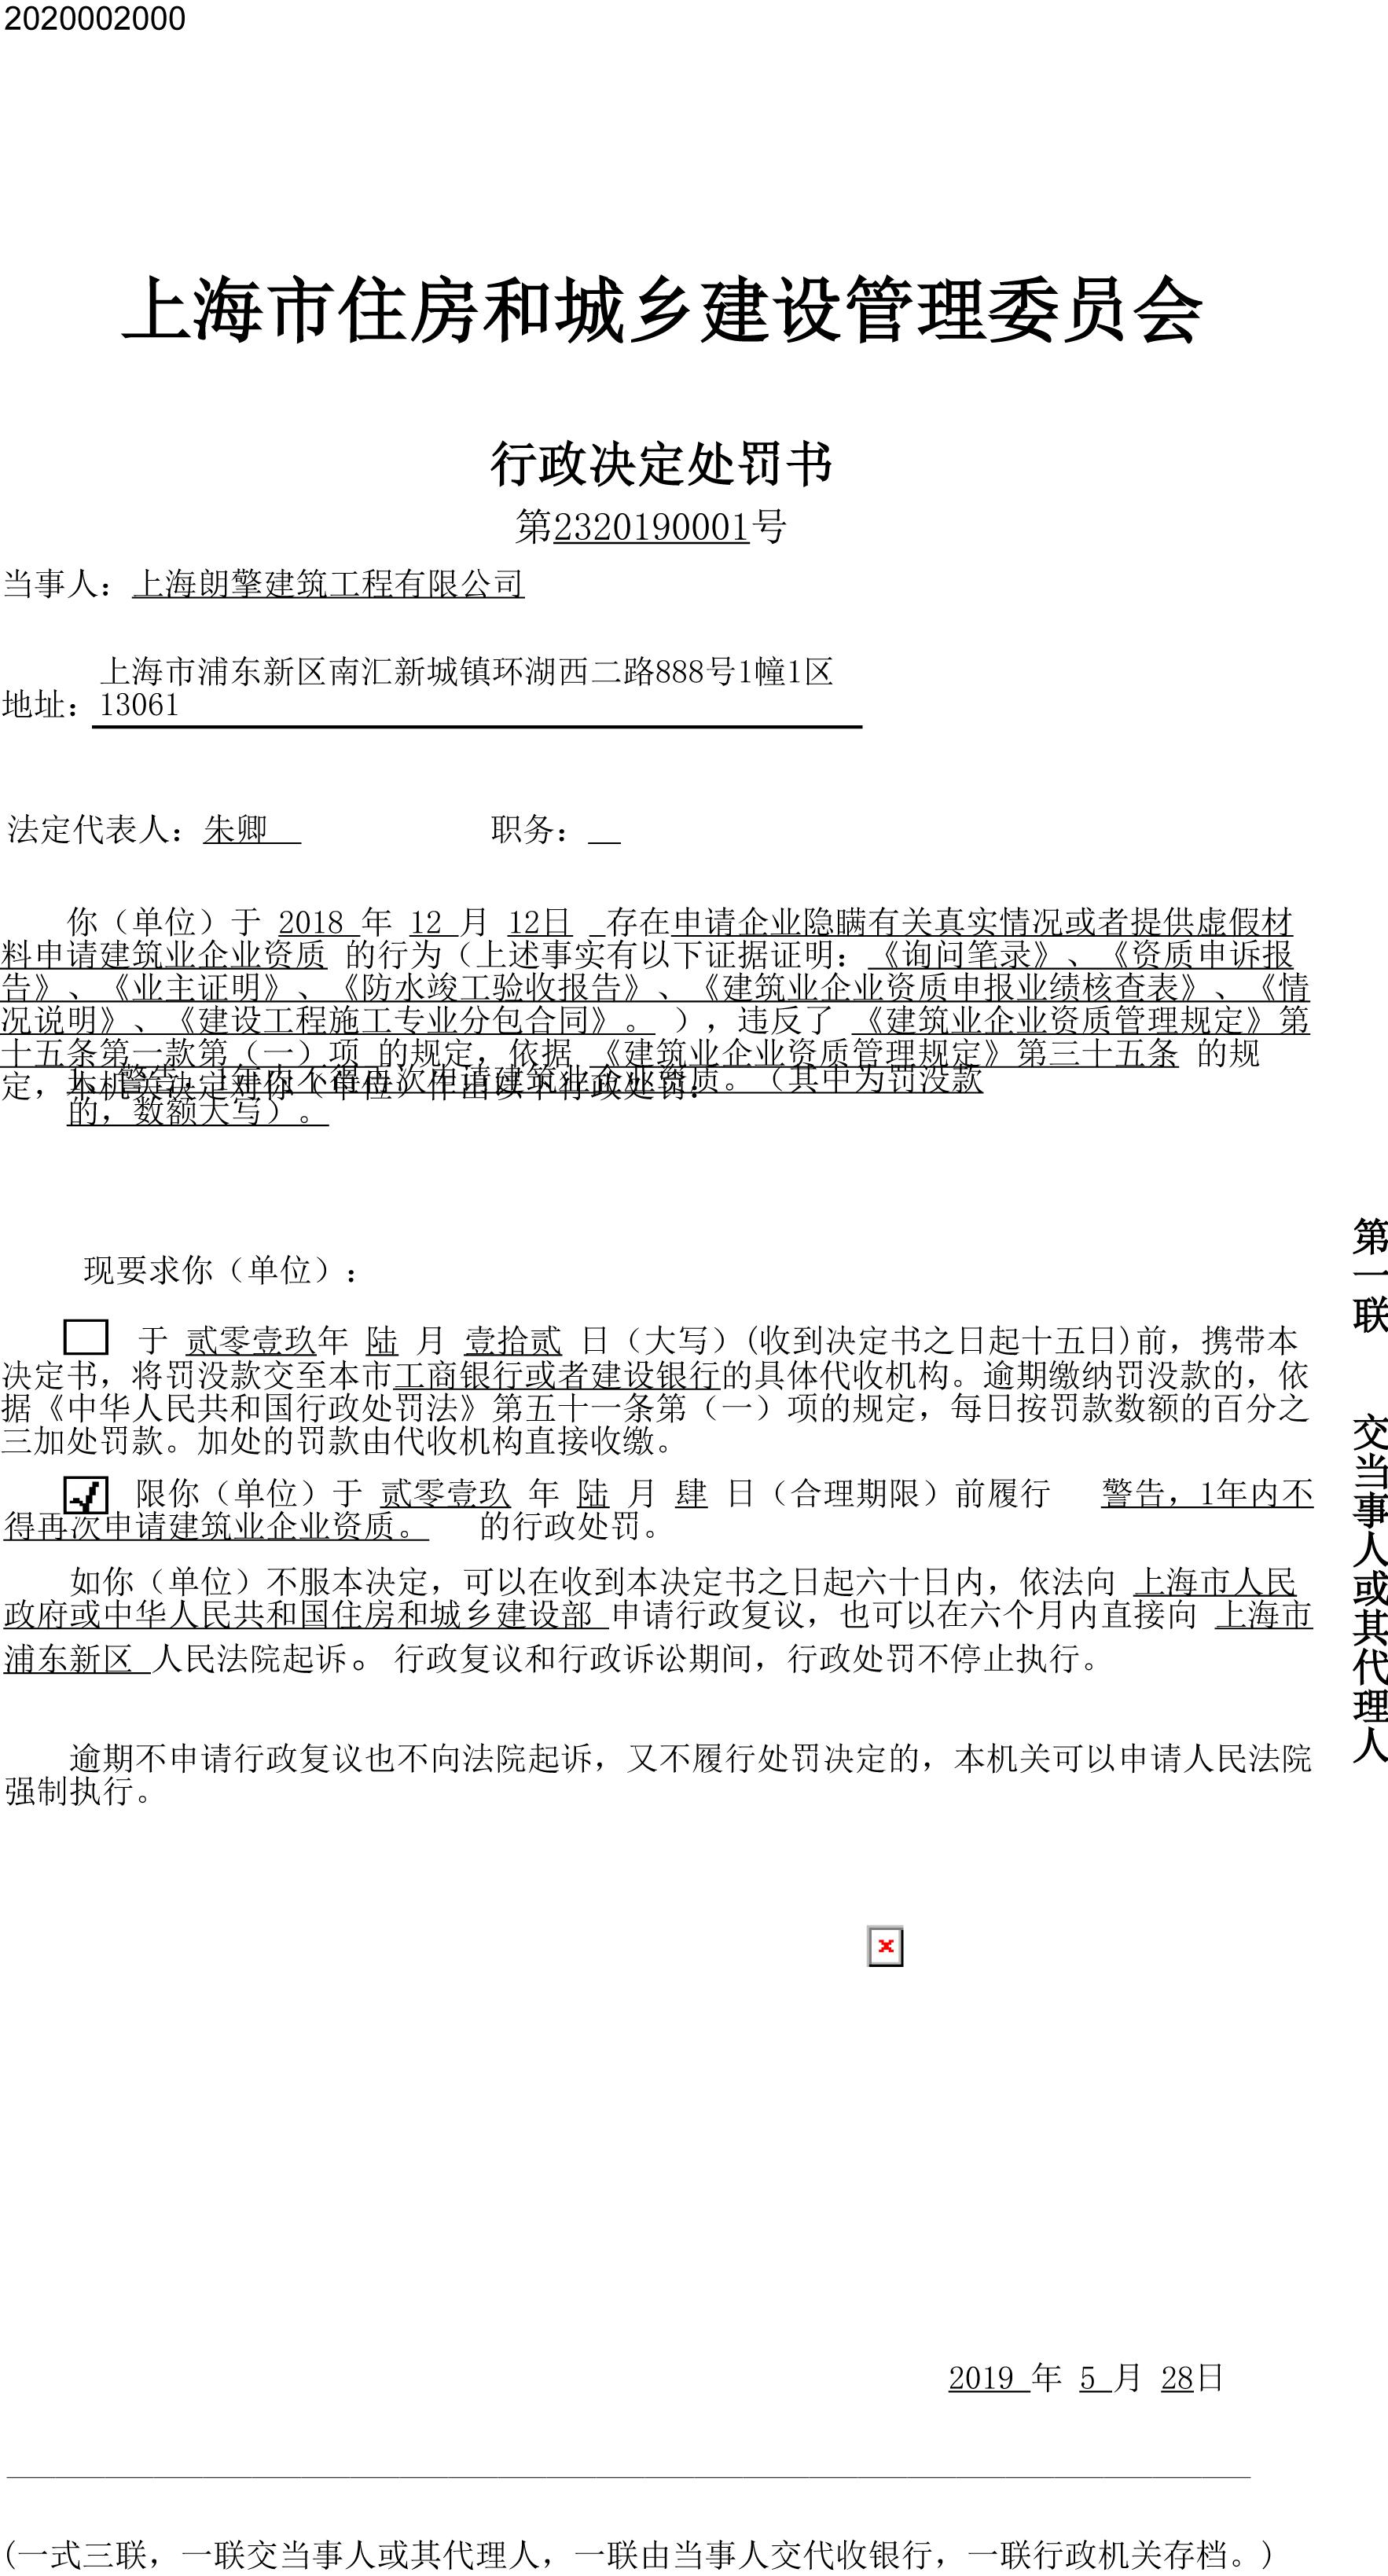 上海朗擎建筑工程有限公司提供虚假材料申请资质被处罚